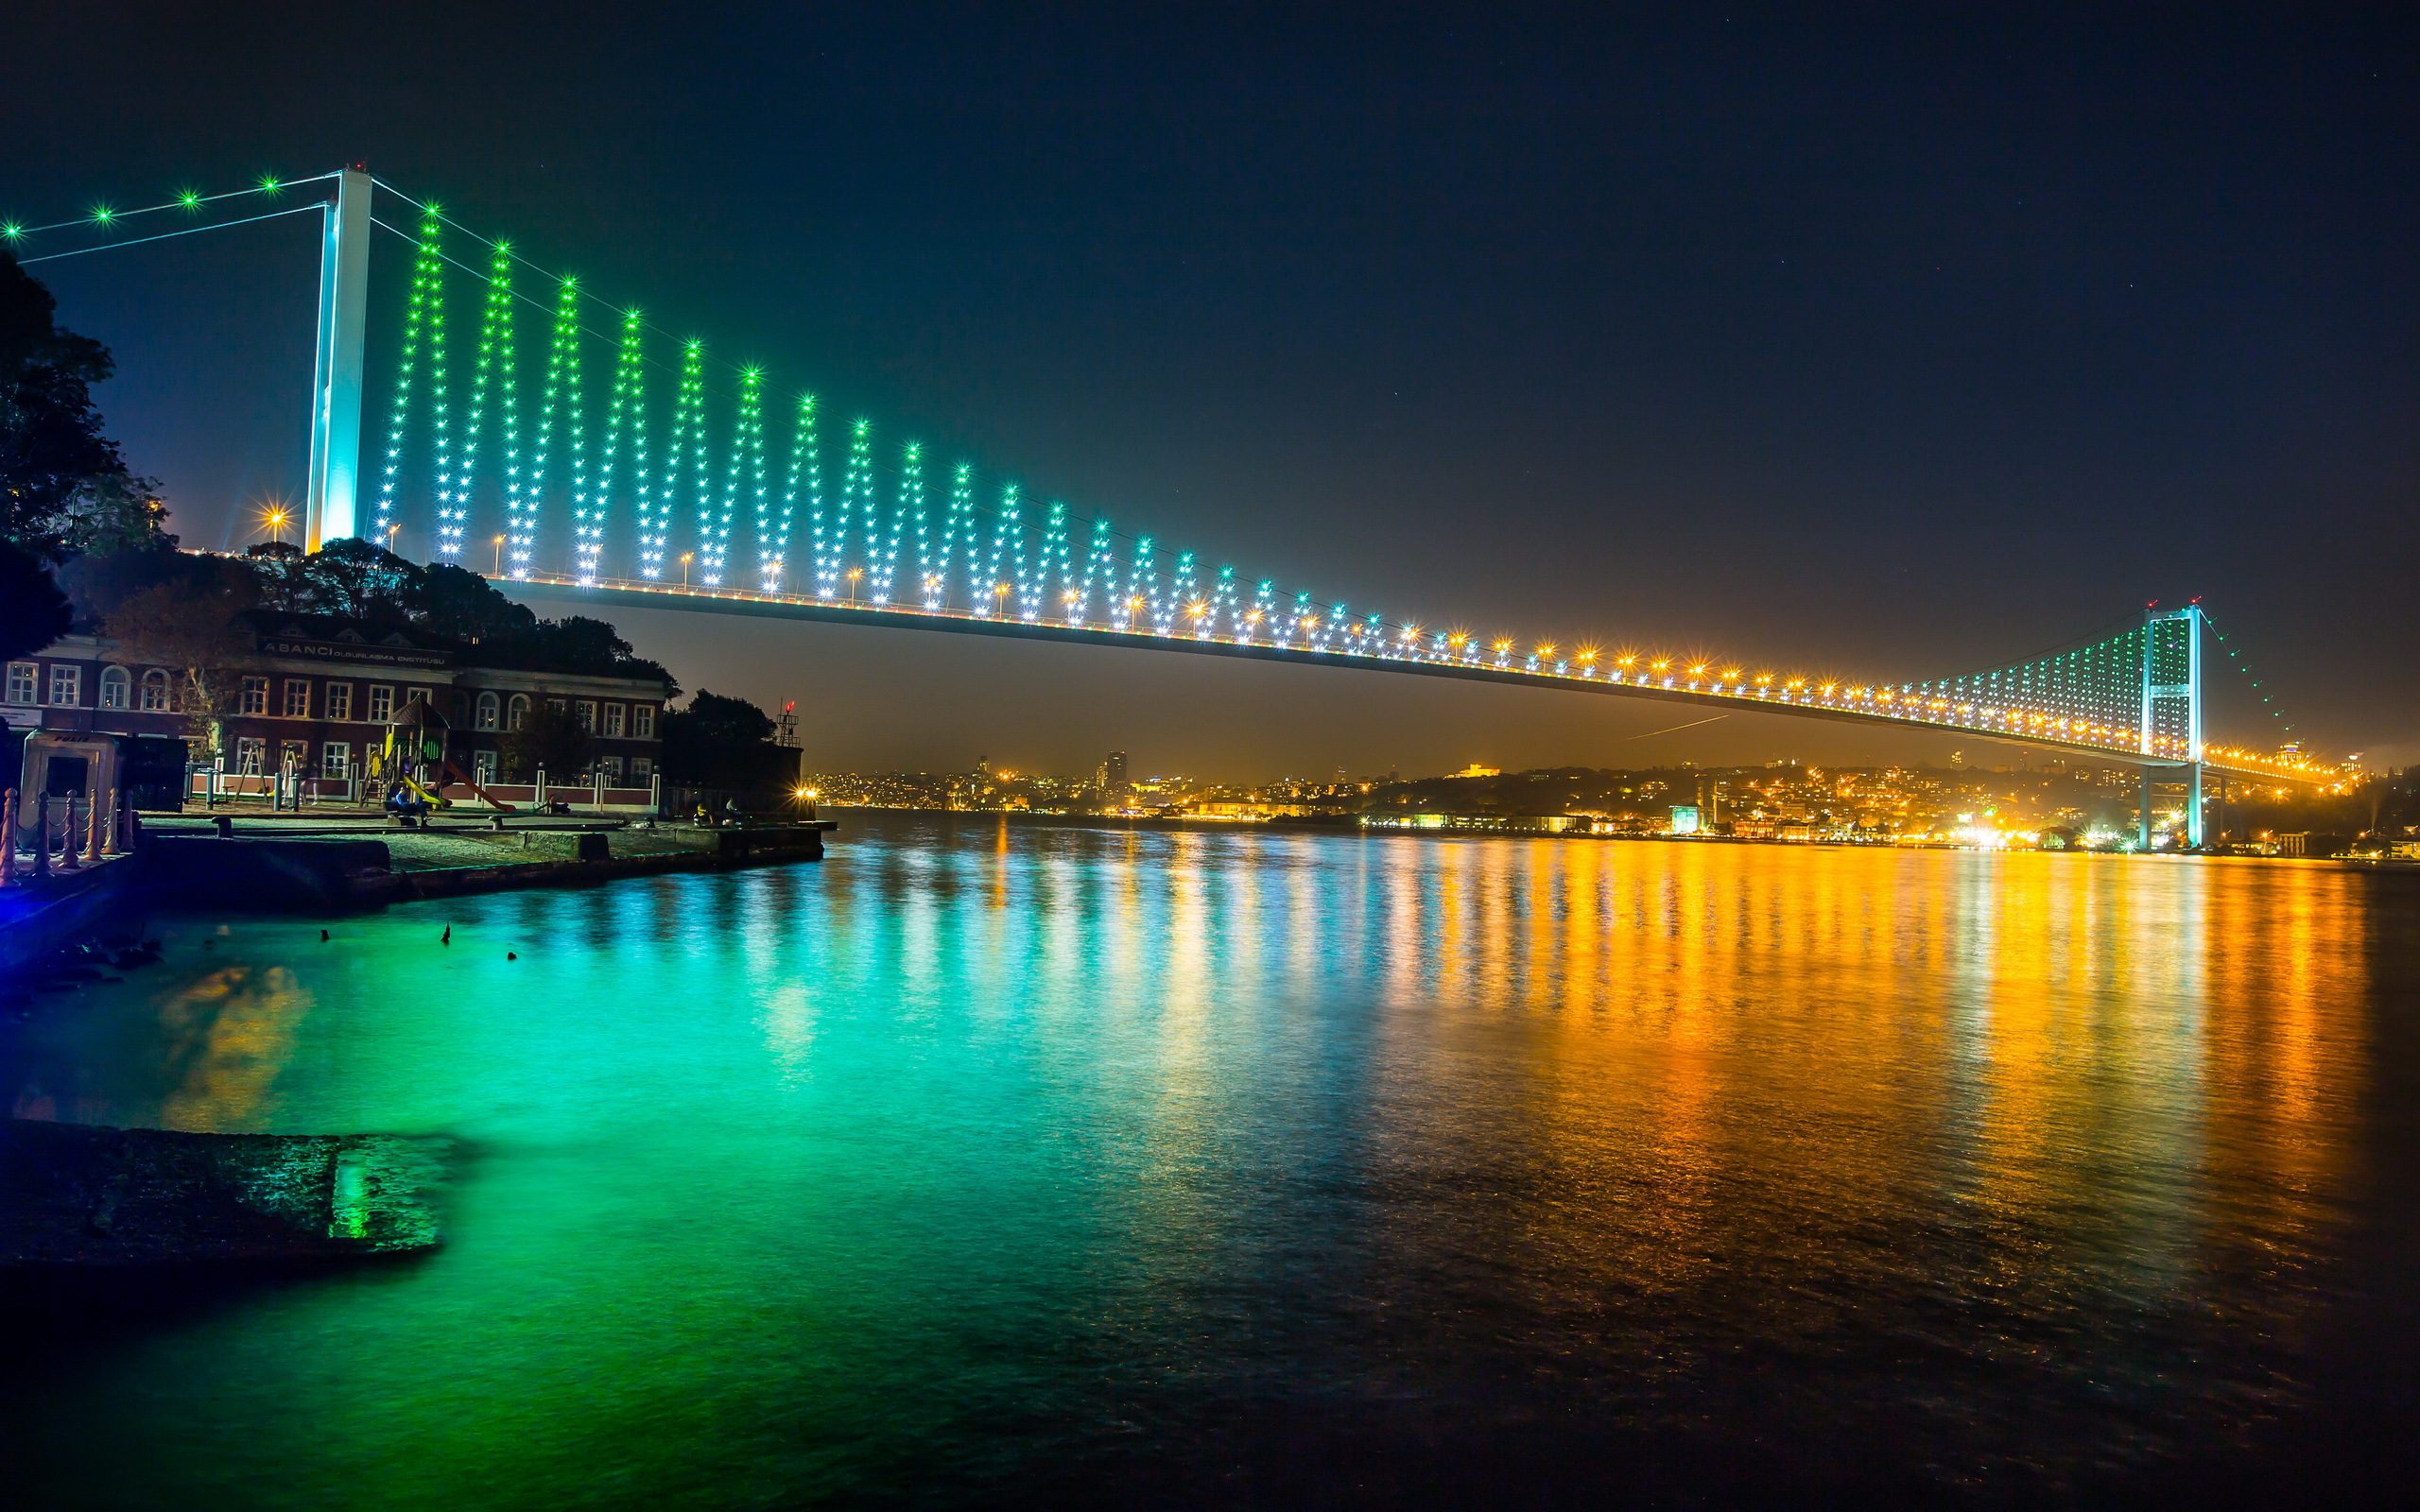 Популярные заставки и фоны Босфорский Мост на компьютер